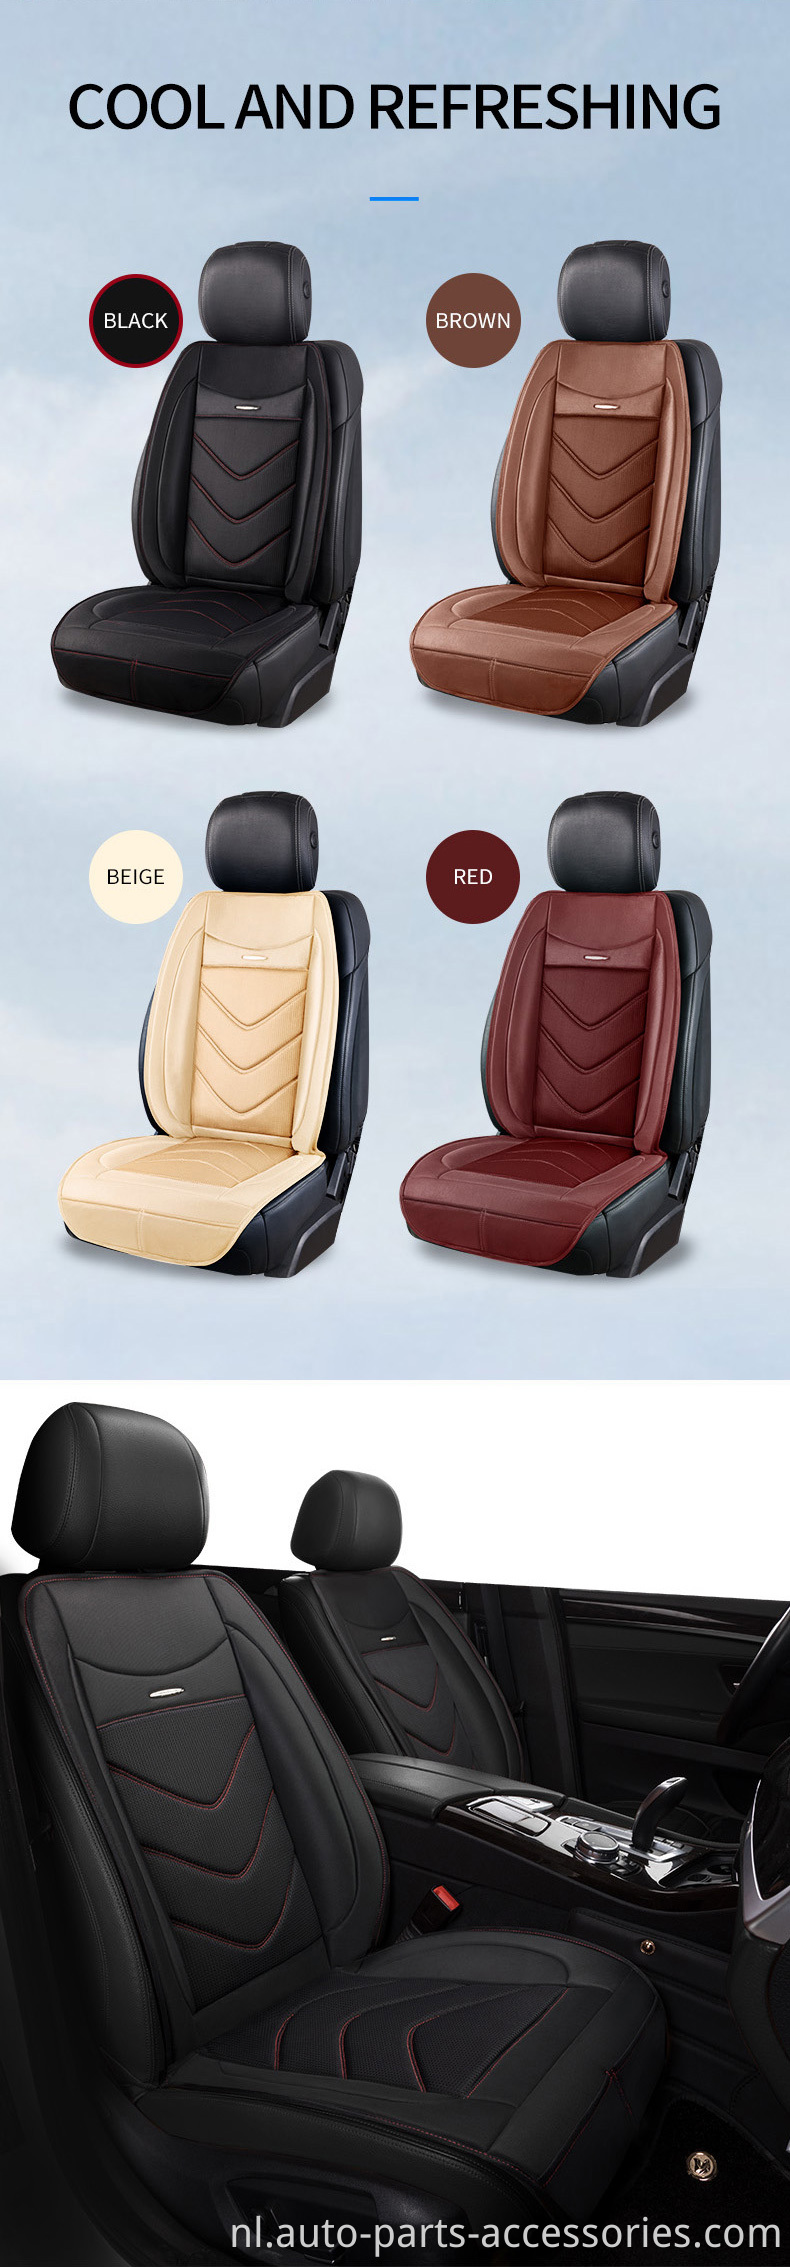 Aangepaste auto -accessoires ergonomische bestuurdersstoel bedekken kussen autostoelhoes